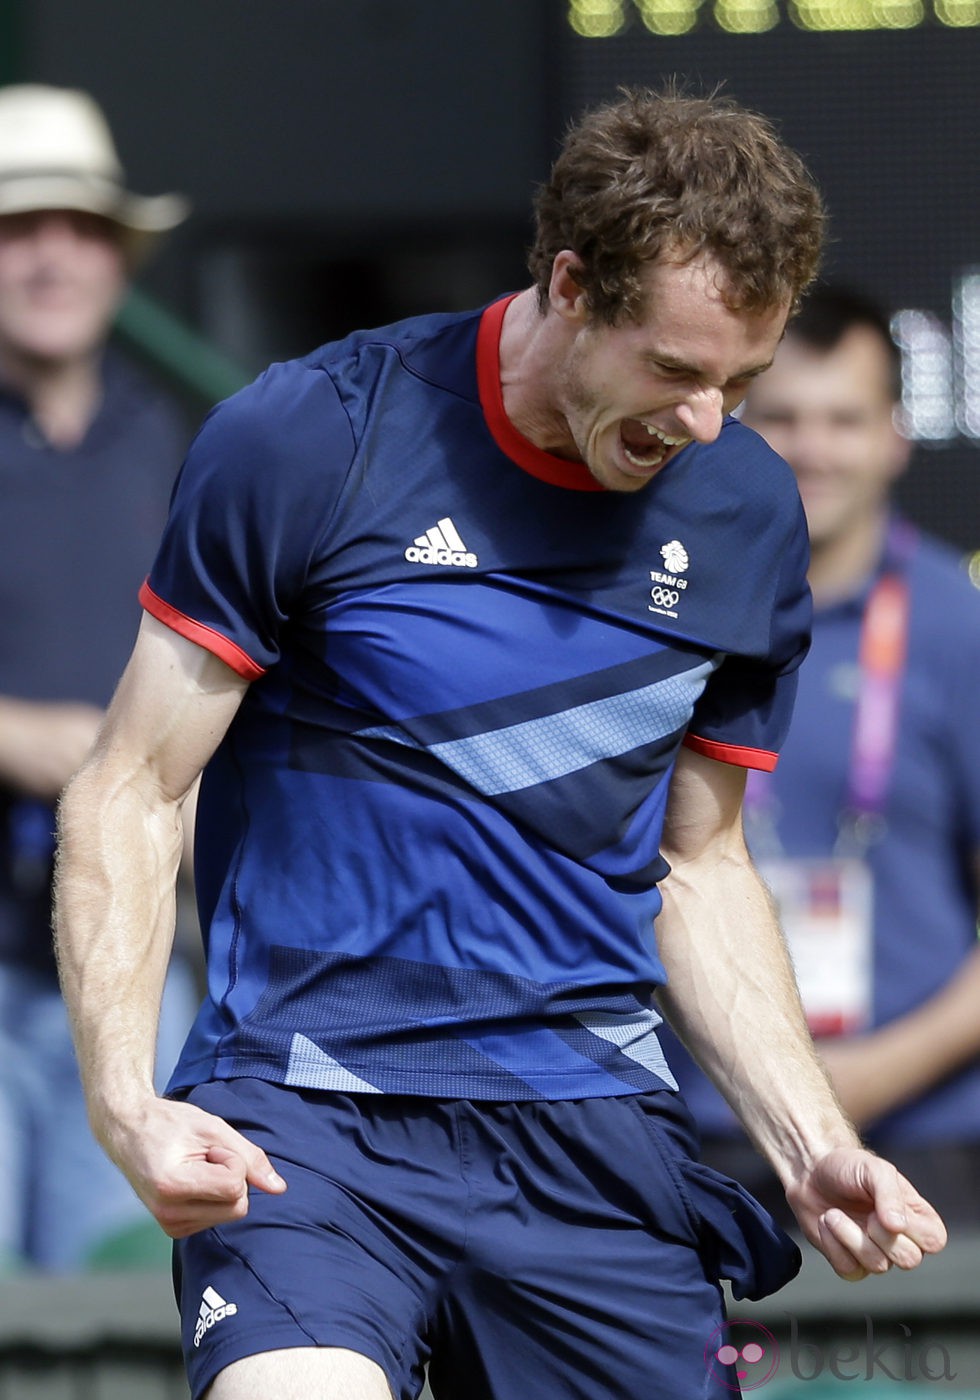 Andy Murray celebra su oro olímpico en Londres 2012